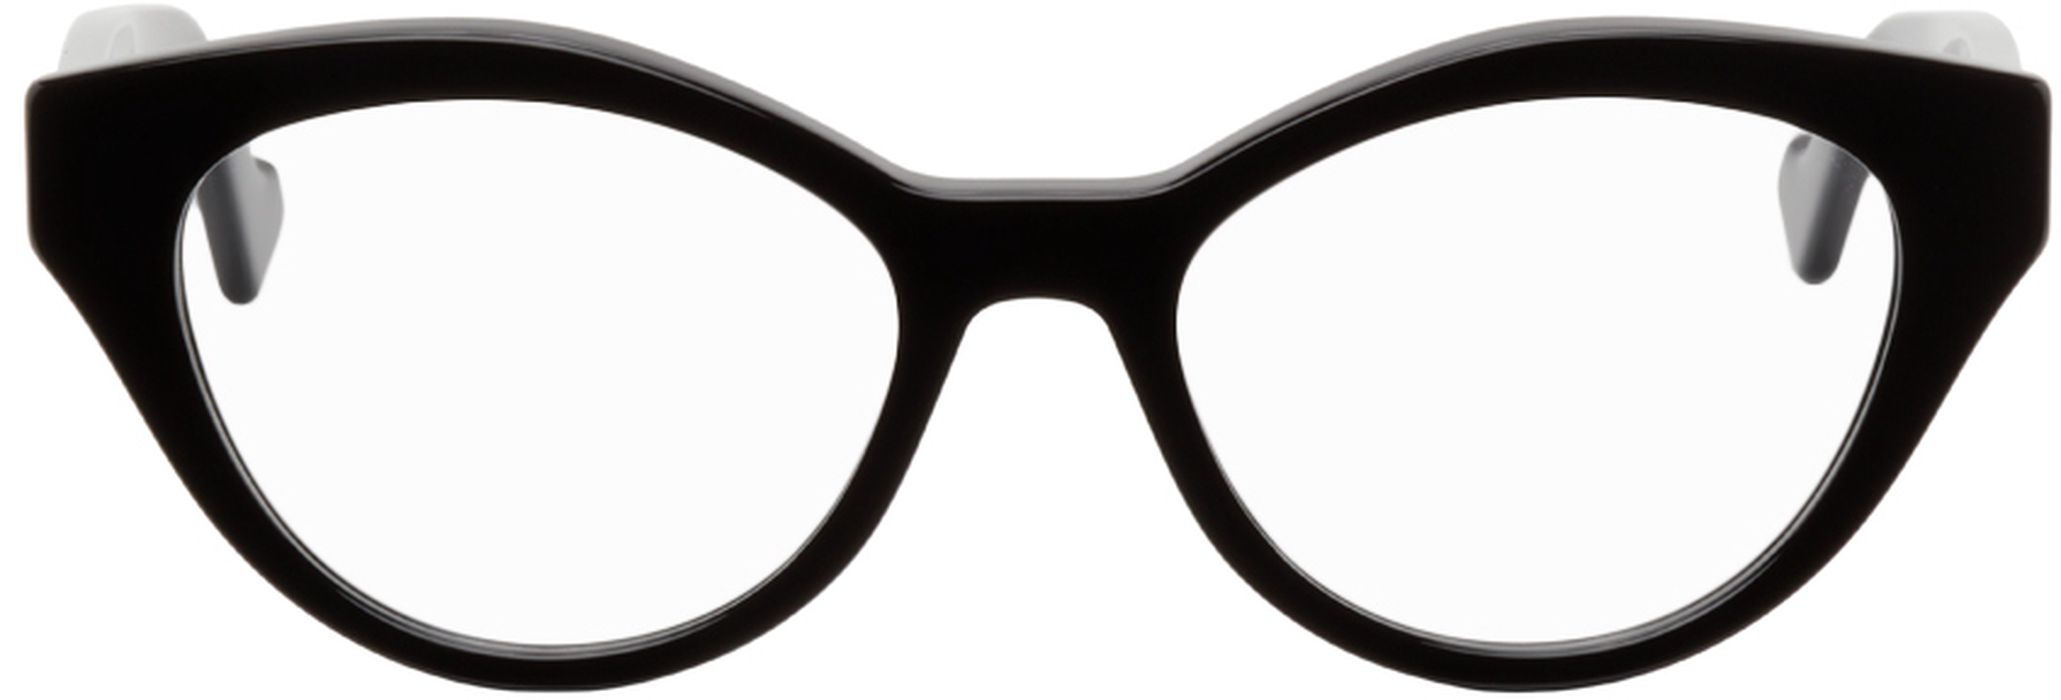 Gucci Black Oval GG Glasses